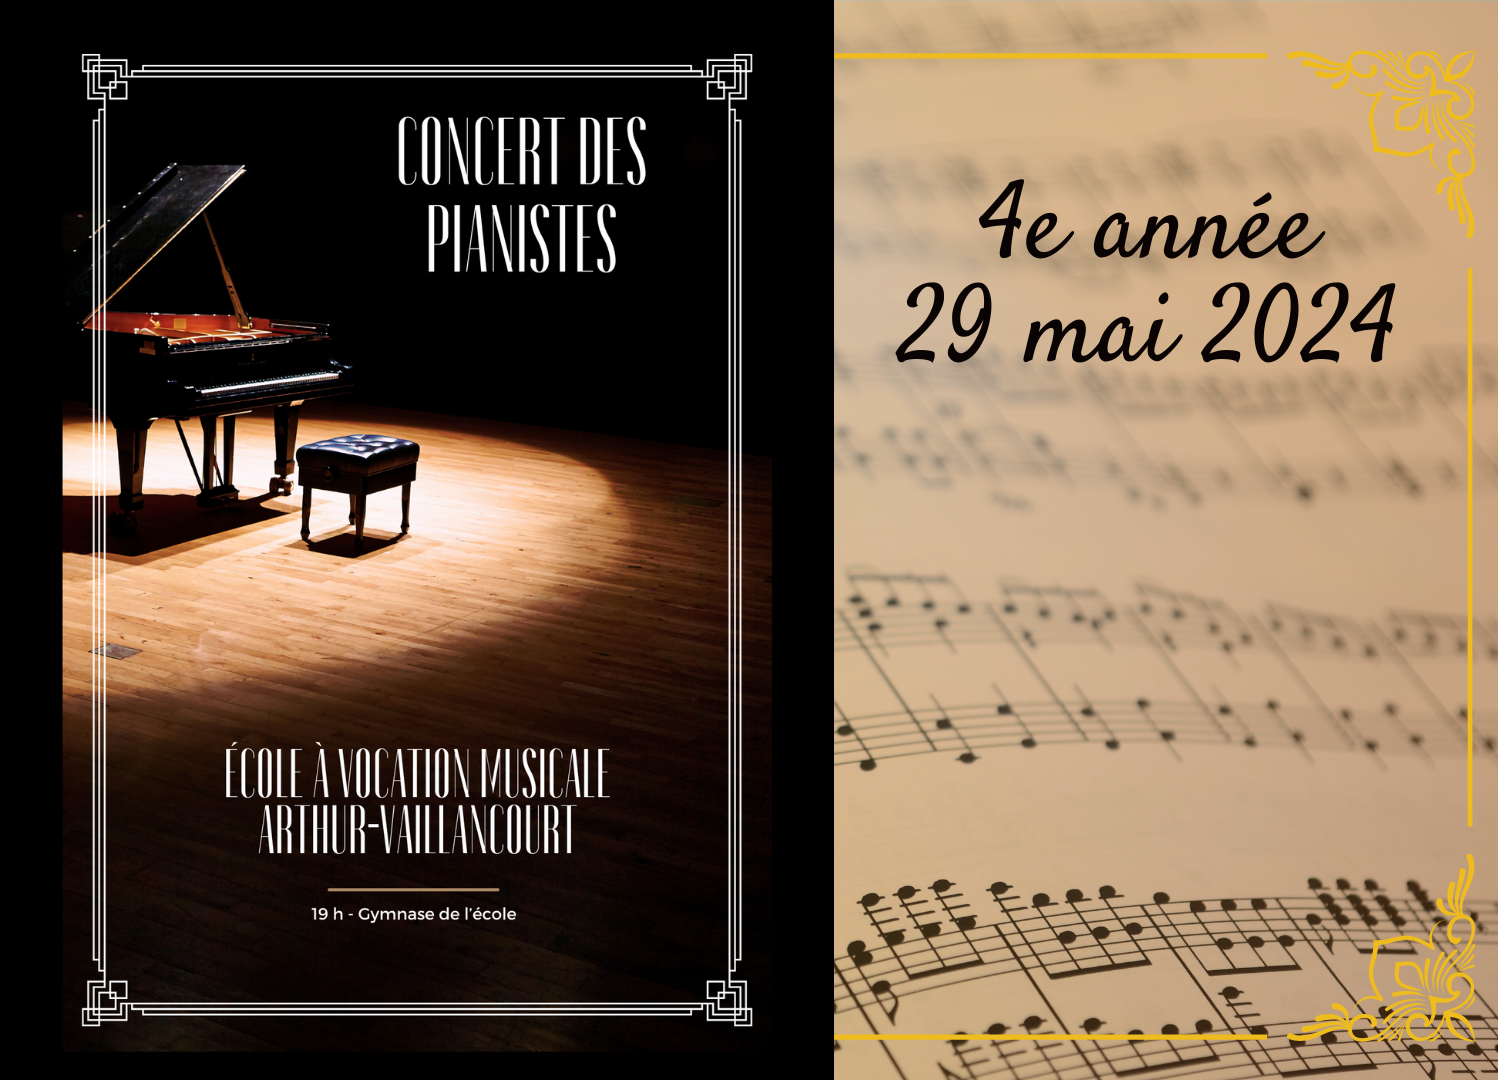 Concert de piano - 4e année (29 mai 2024)